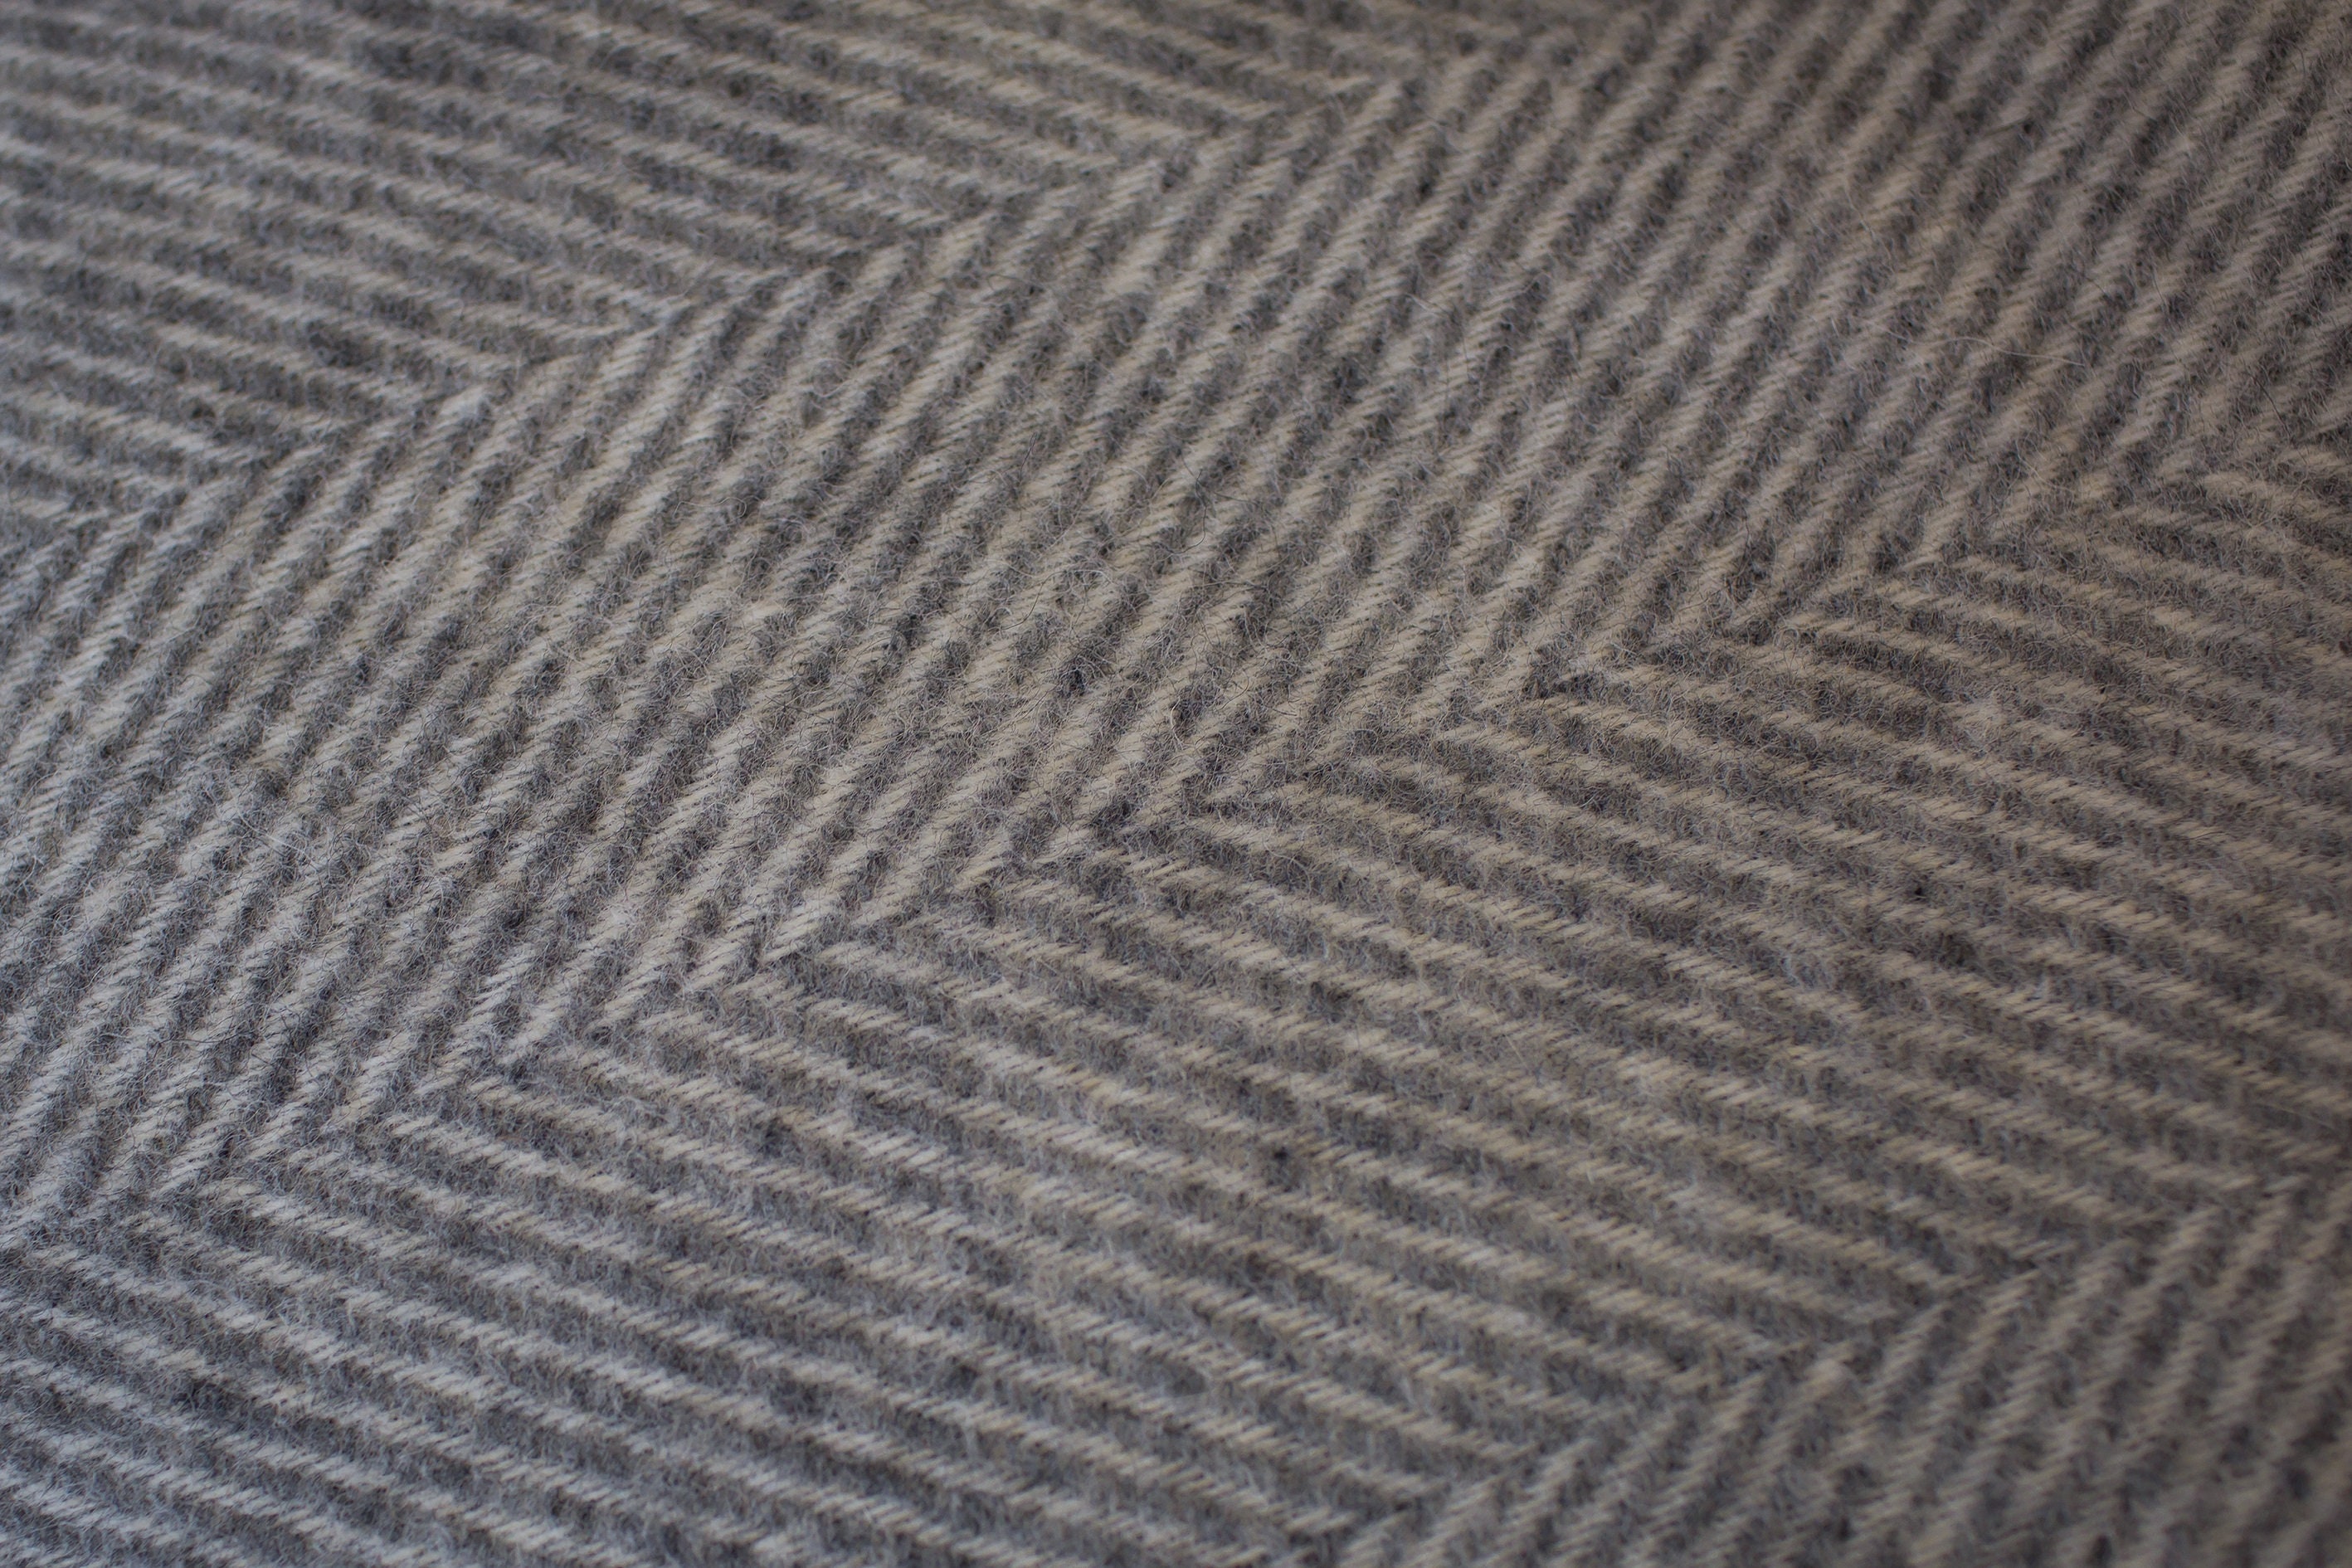 Bestseller Herringbone natural wool blanket throw gray | Etsy